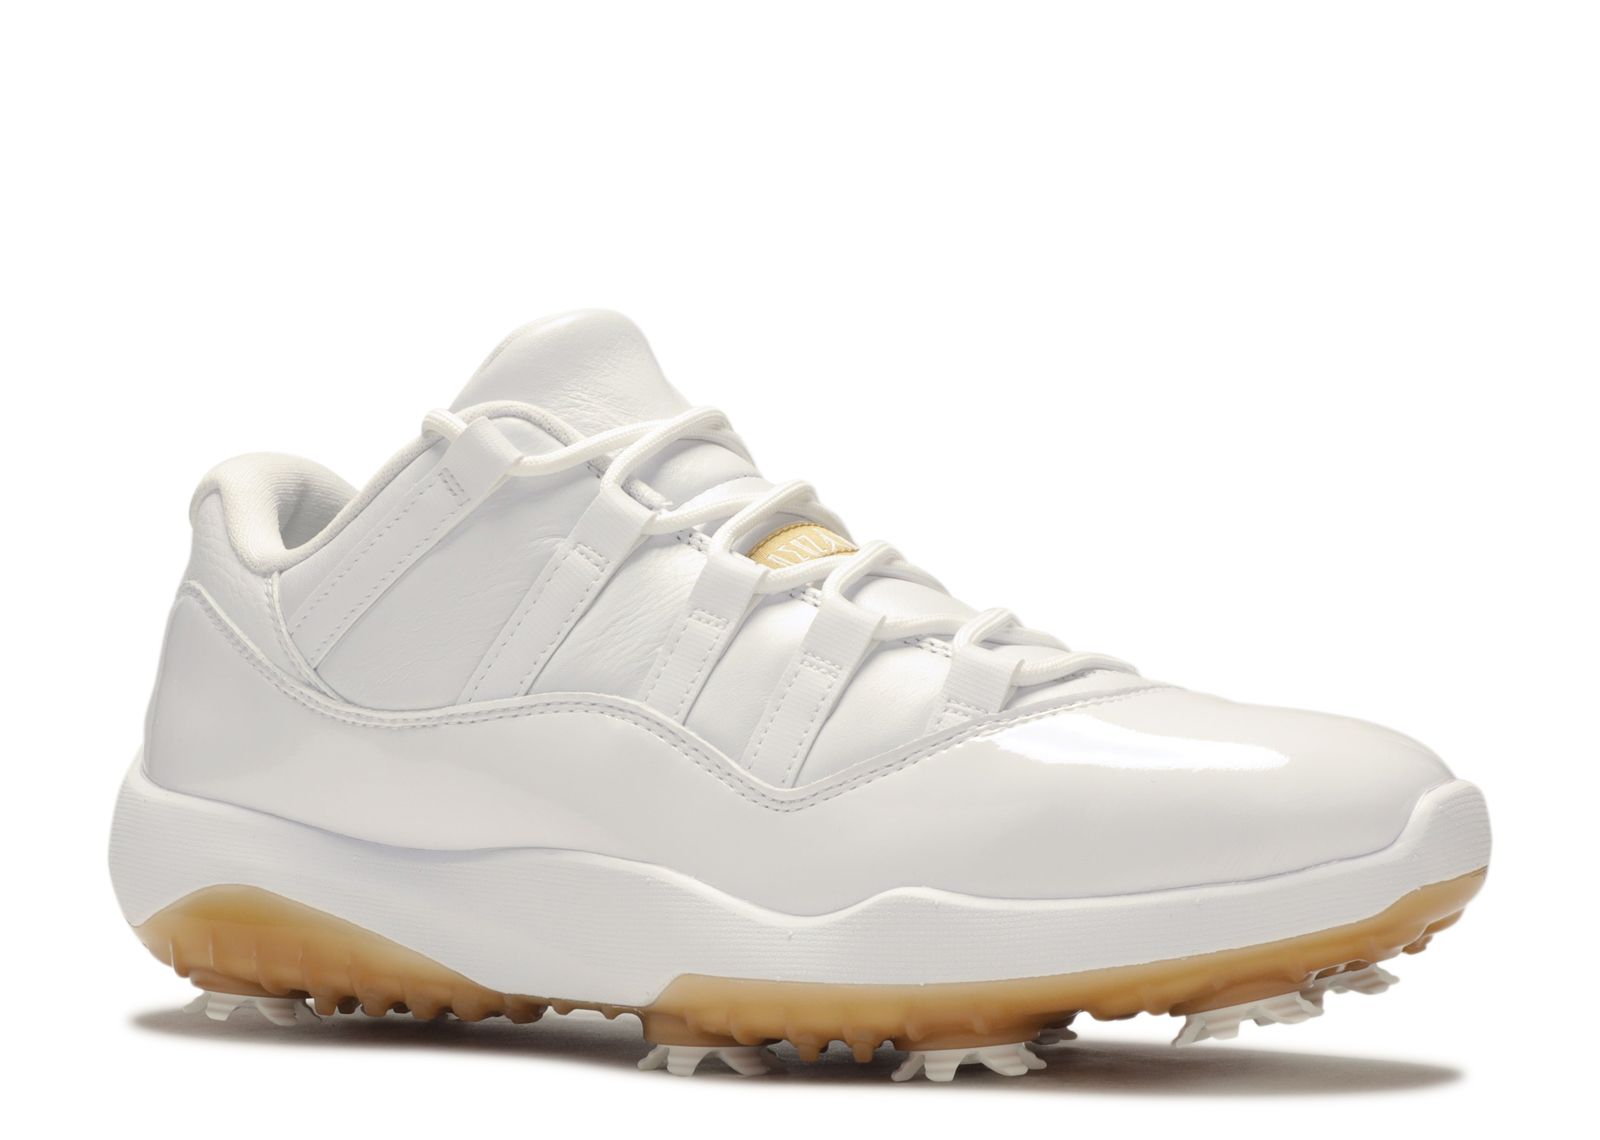 jordan 11 golf shoes white